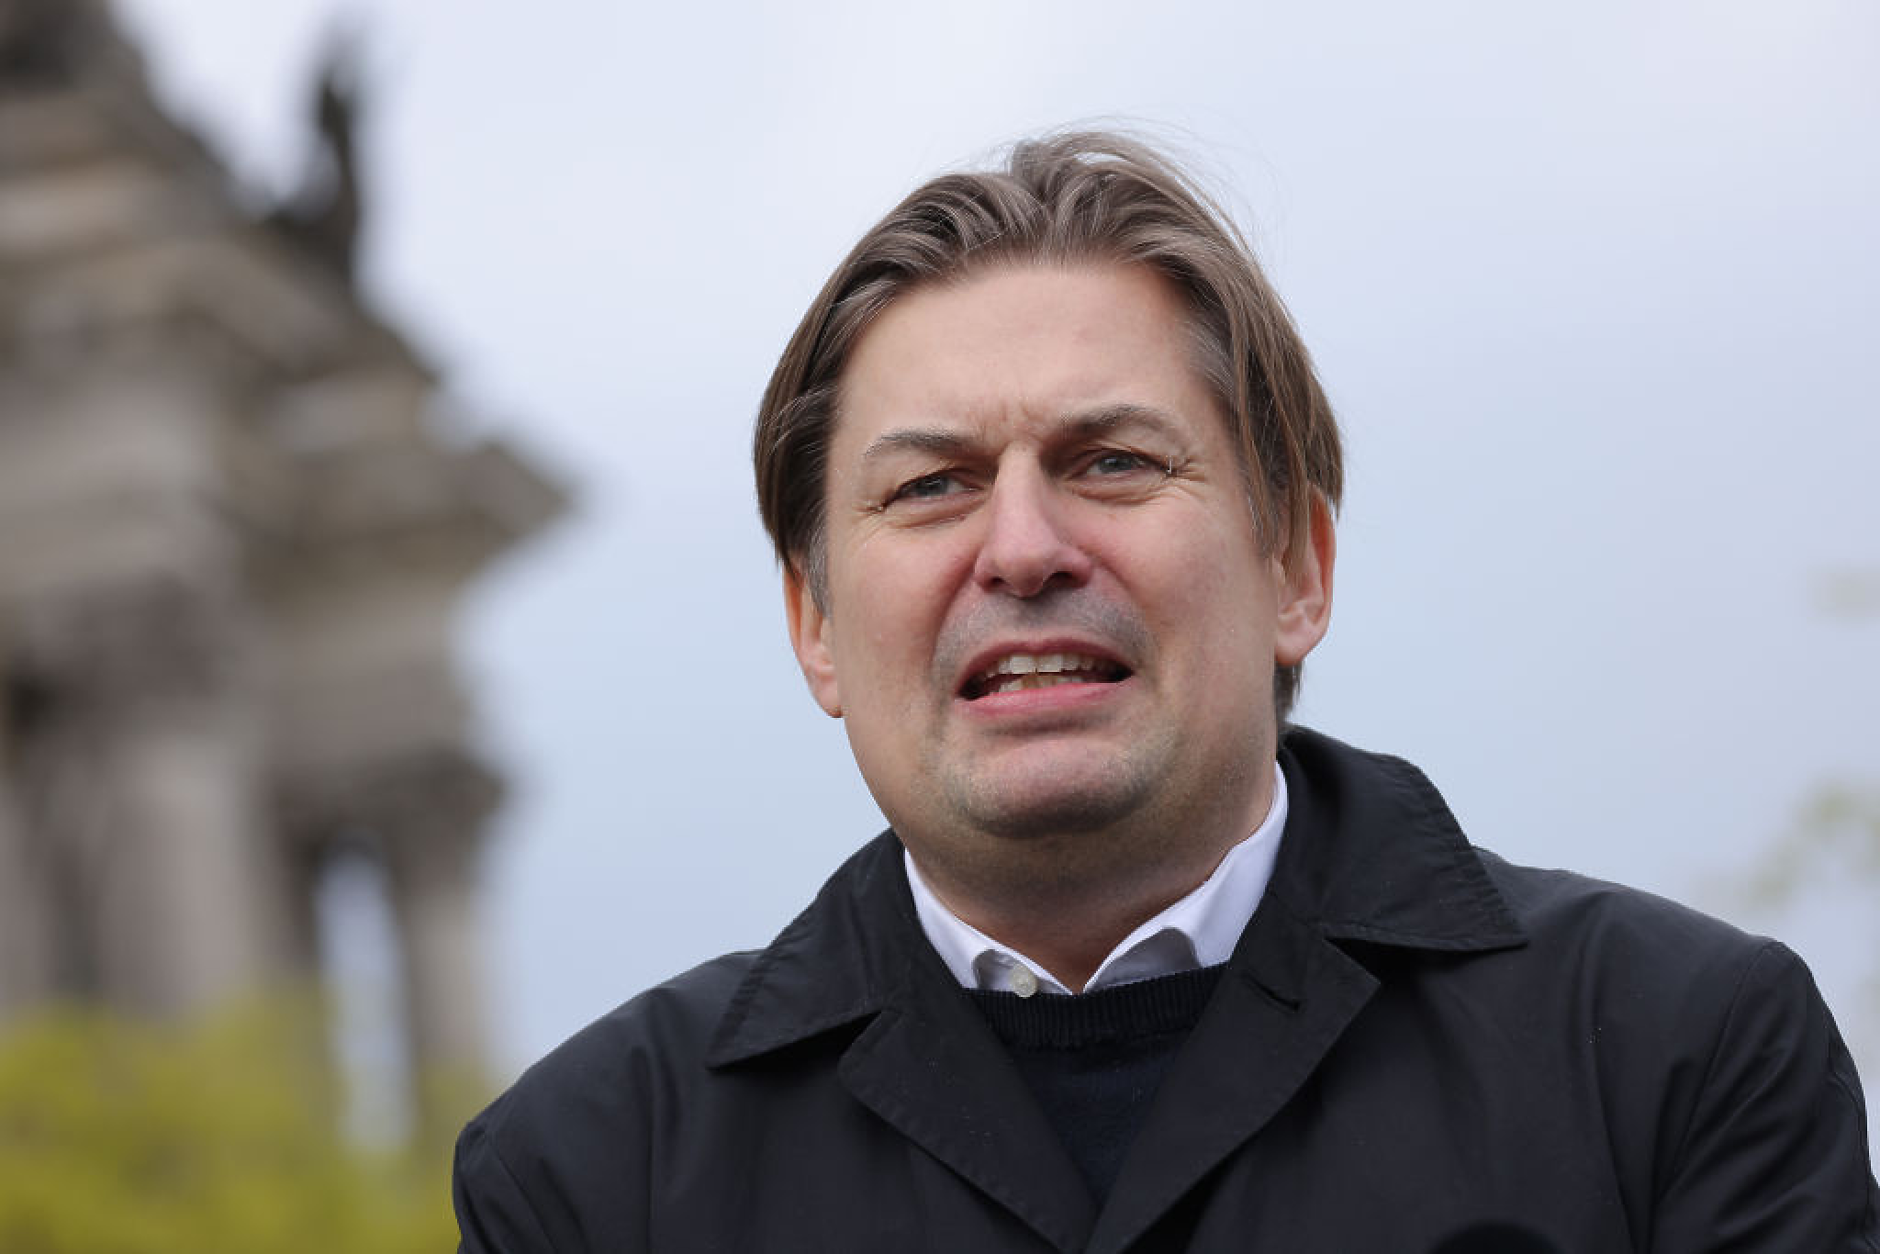 Водачът на евролистата на „Алтернатива за Германия“ скара партията с „Национален сбор“ на Льо Пен